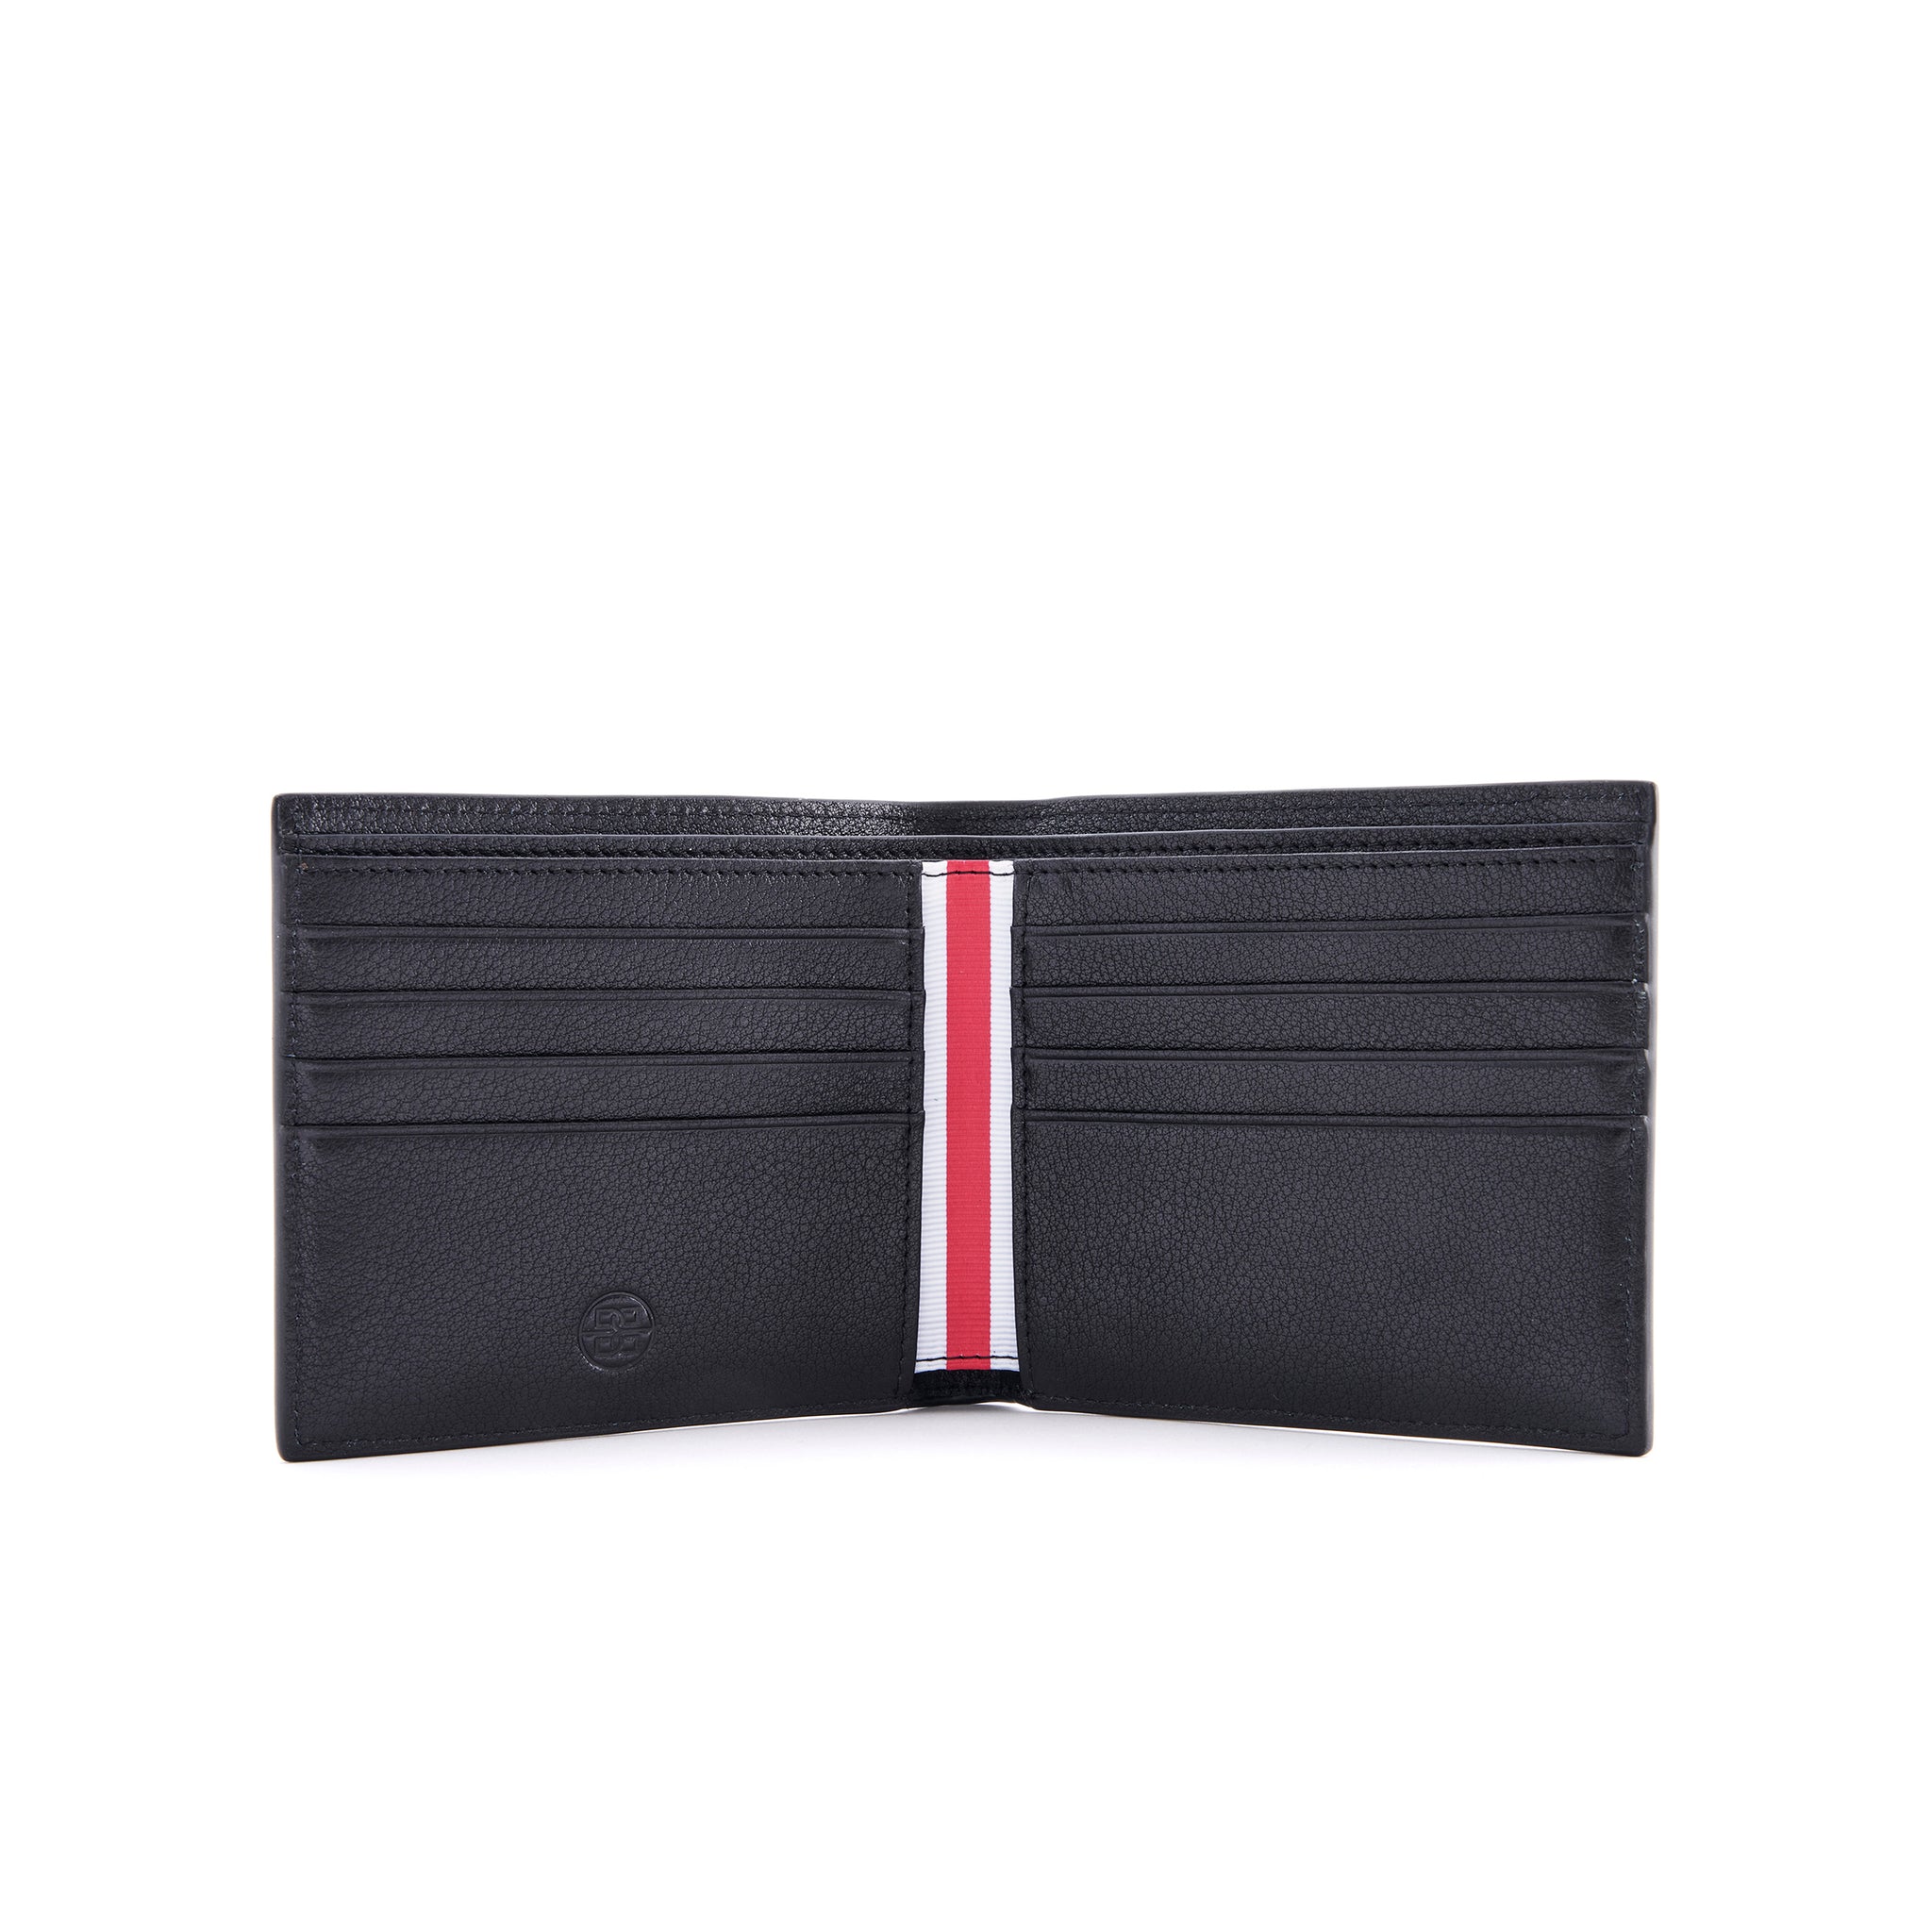 Jean - Leather Wallet in Black